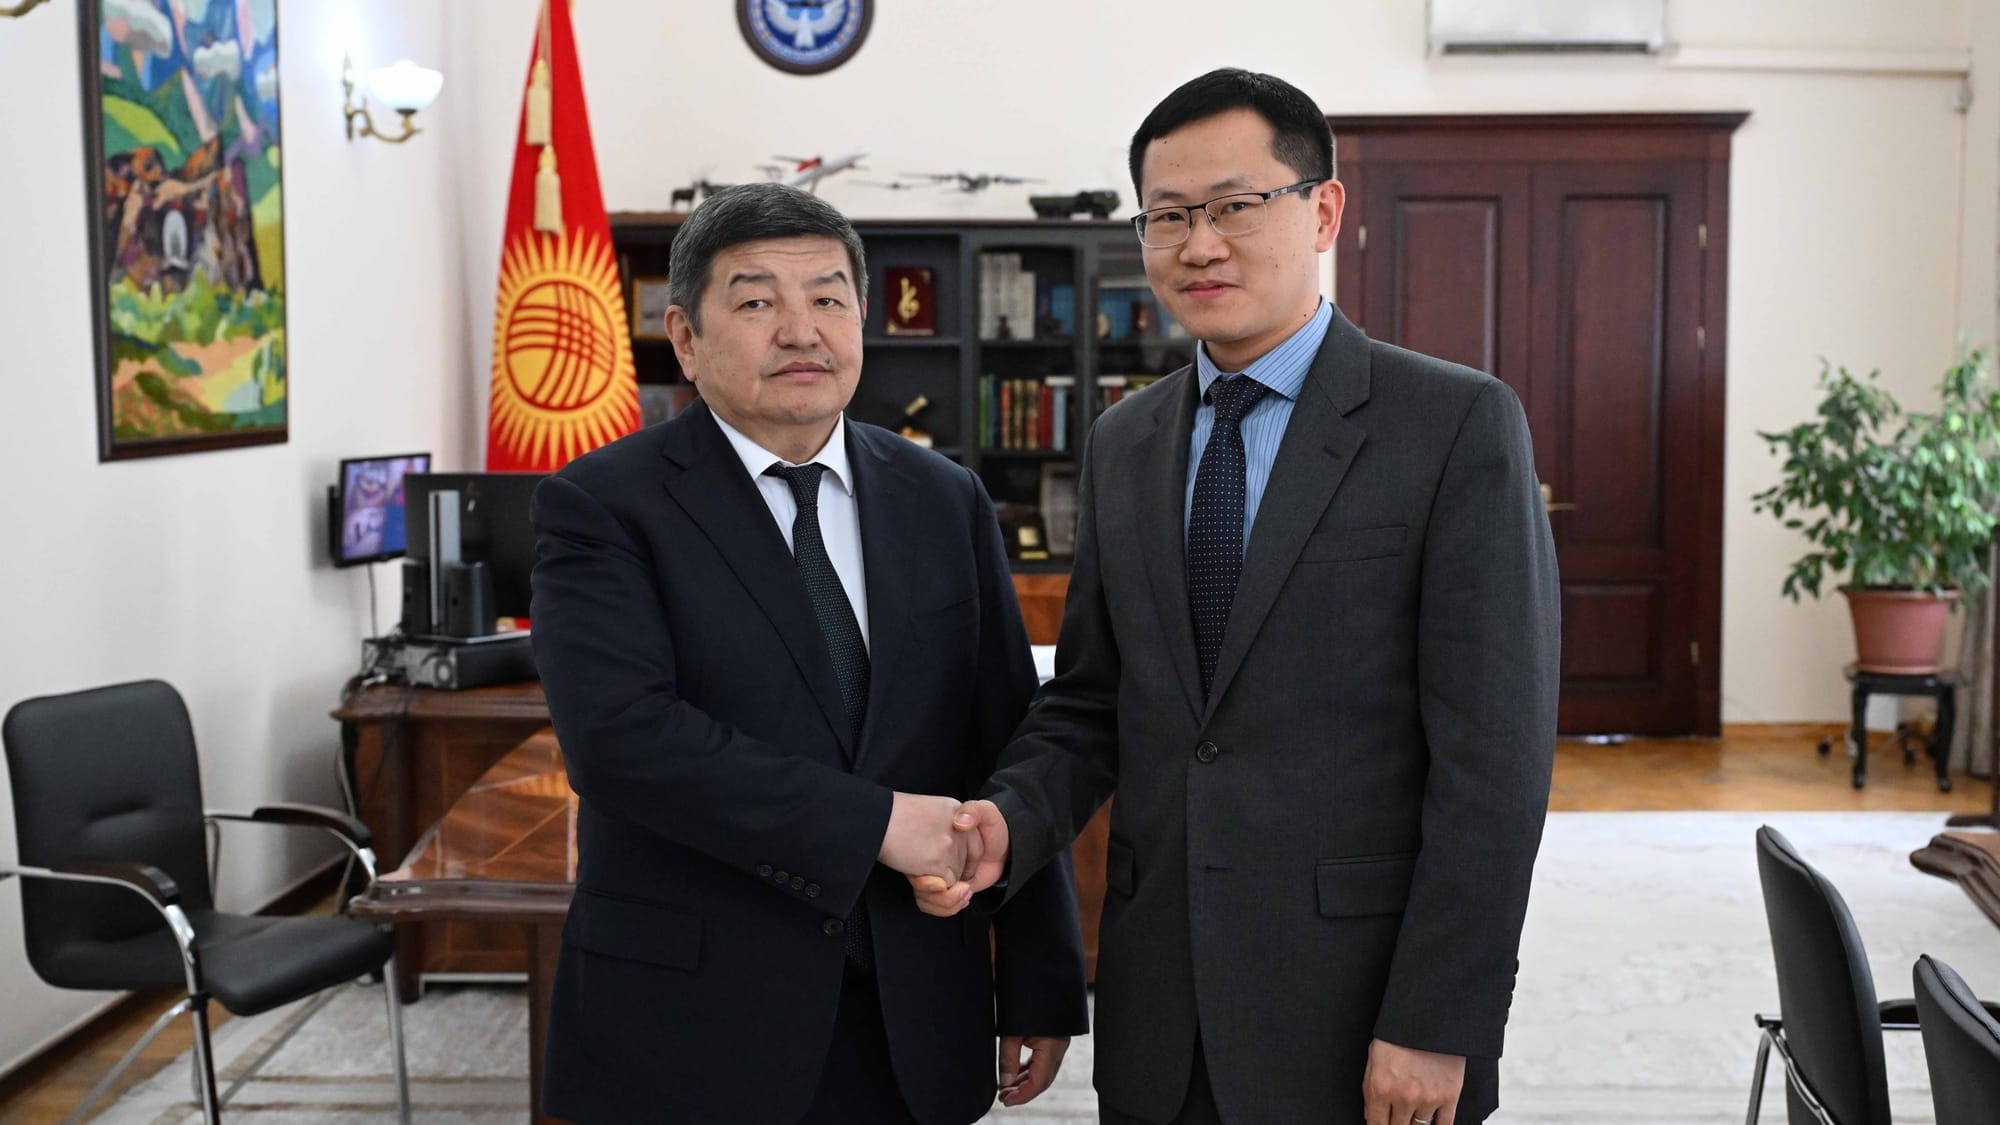 Акылбек Жапаров обсудил с главой АБР в Кыргызстане строительство Камбаратинской ГЭС-1